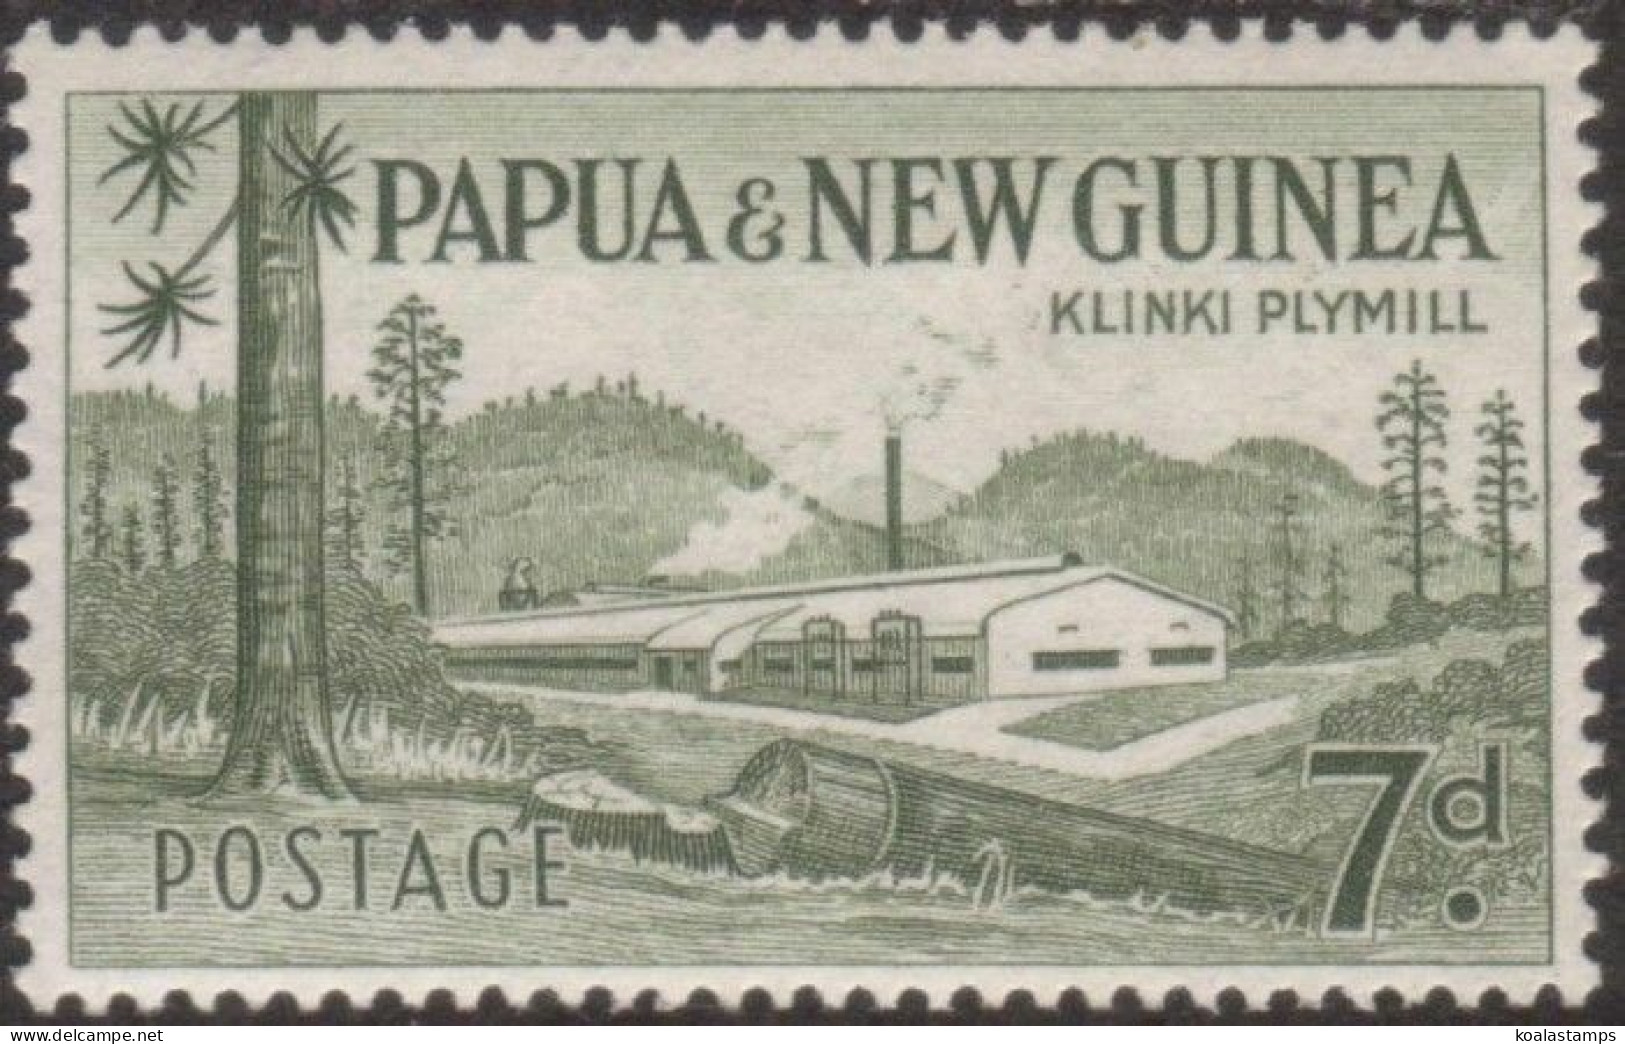 Papua New Guinea 1958 SG20 7d Klinki Plymill MNH - Papouasie-Nouvelle-Guinée